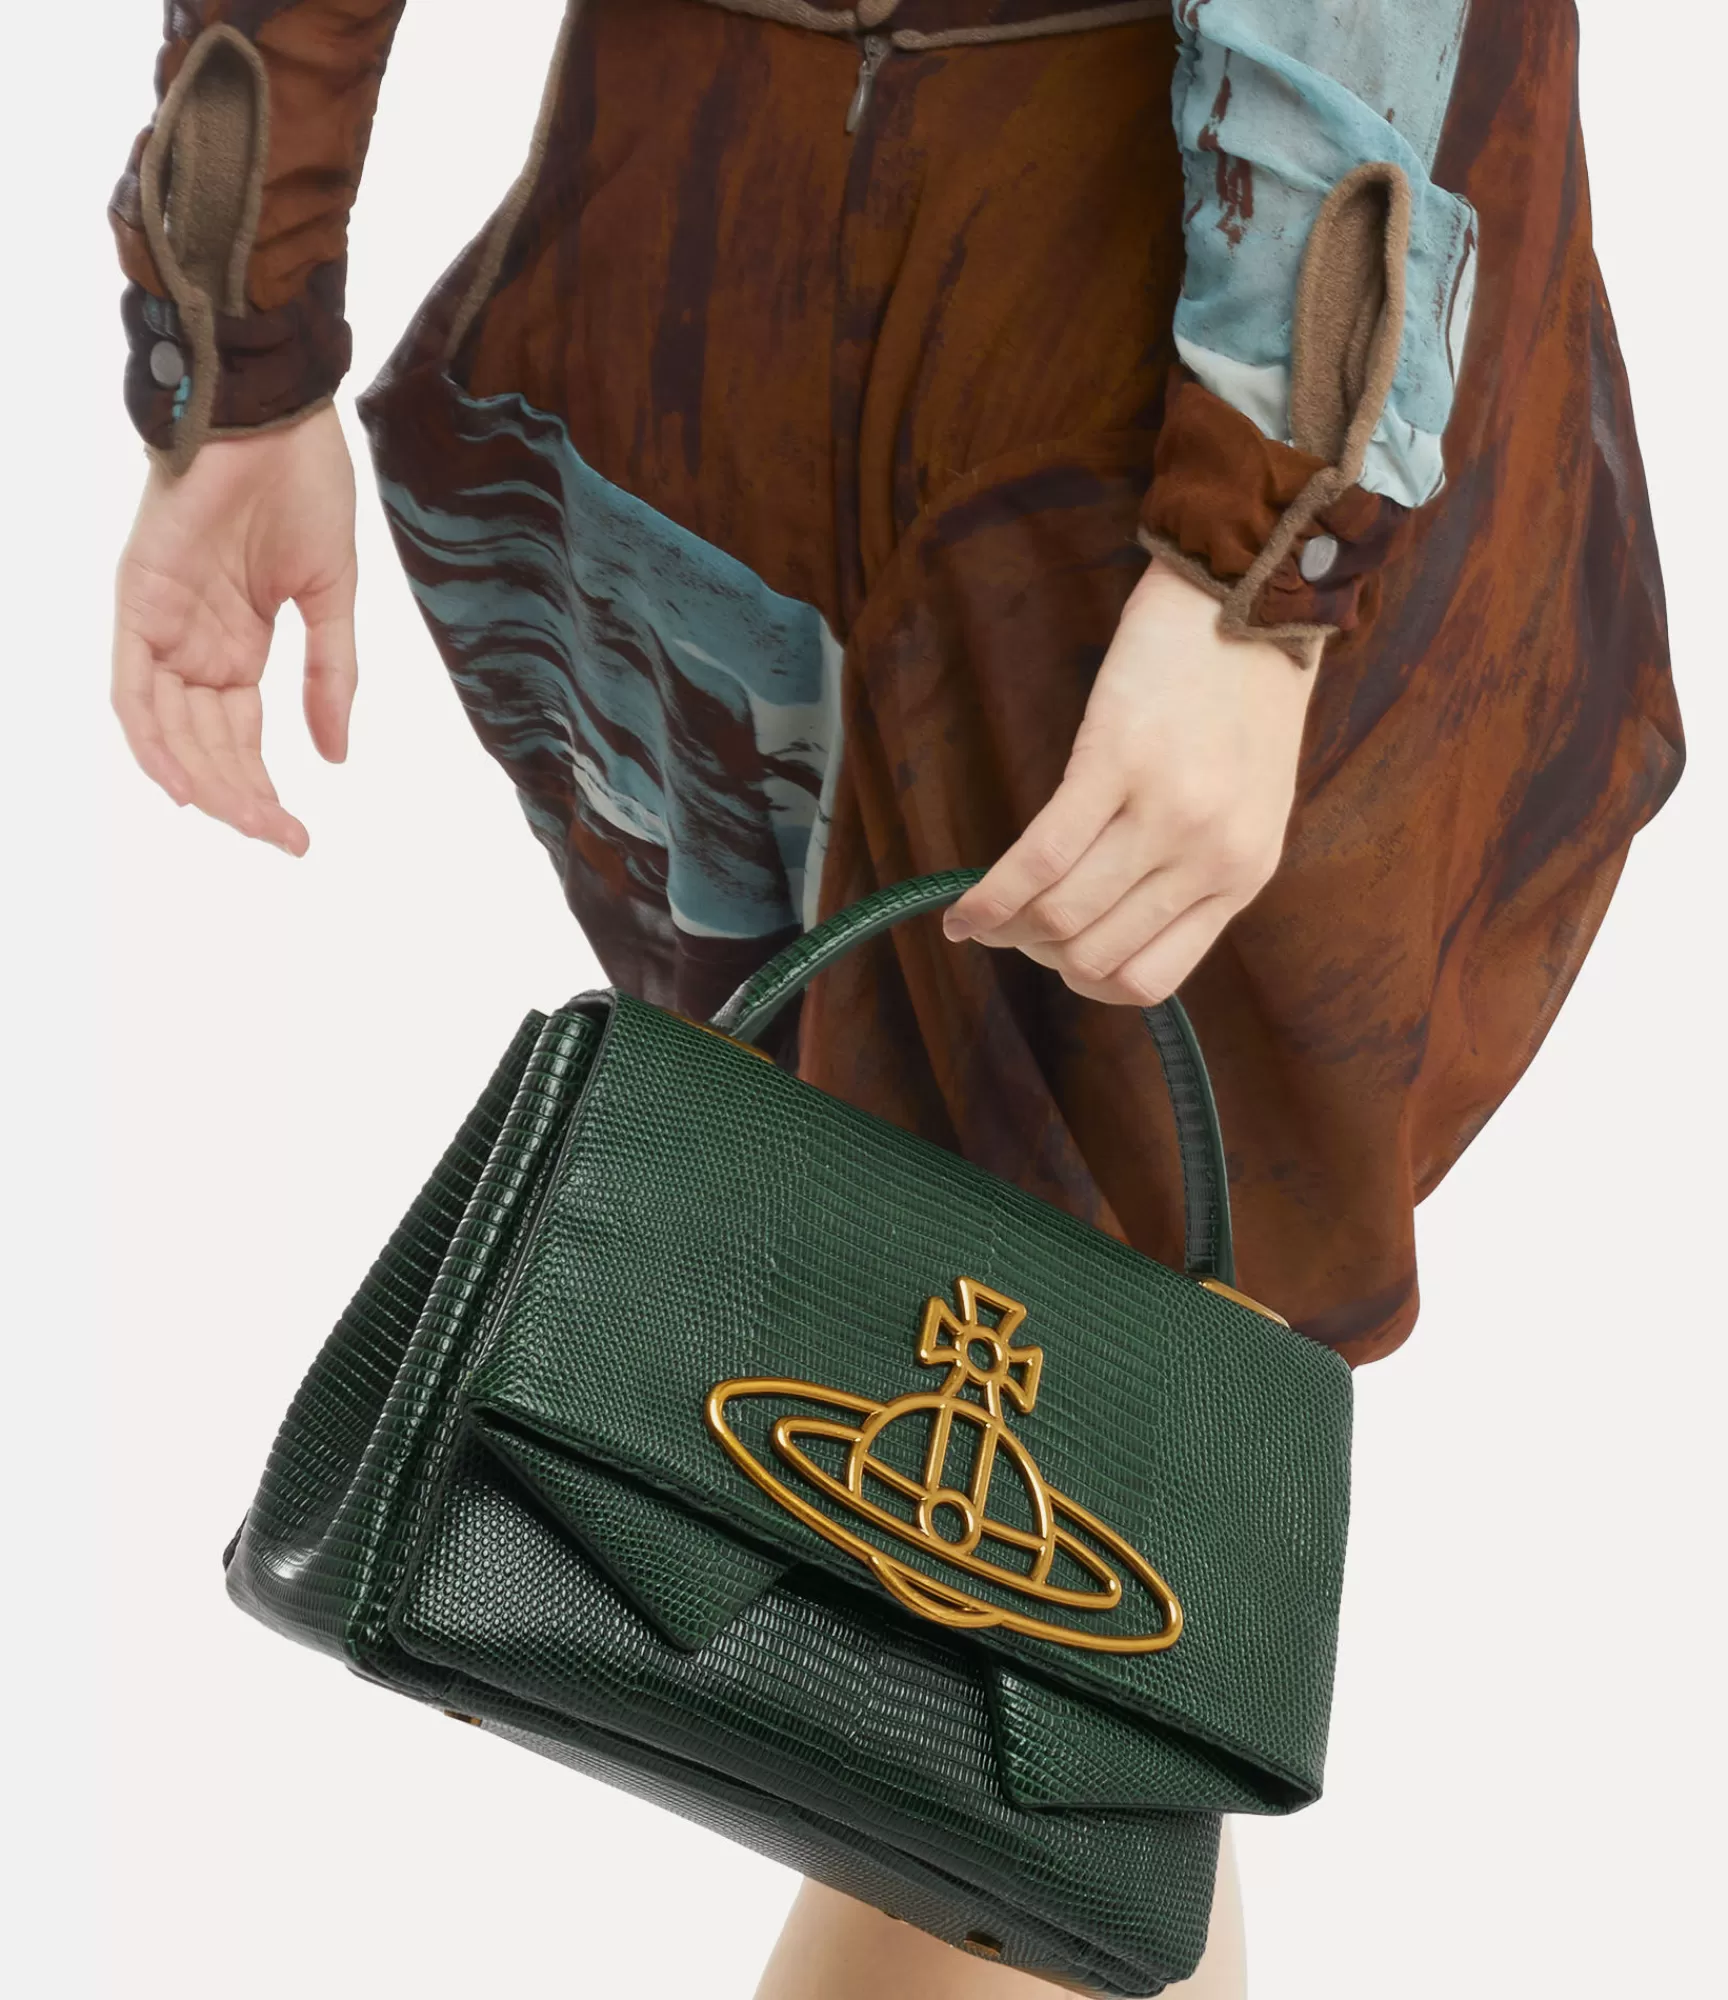 Vivienne Westwood Handbags*Sibyl shoulder bag Green